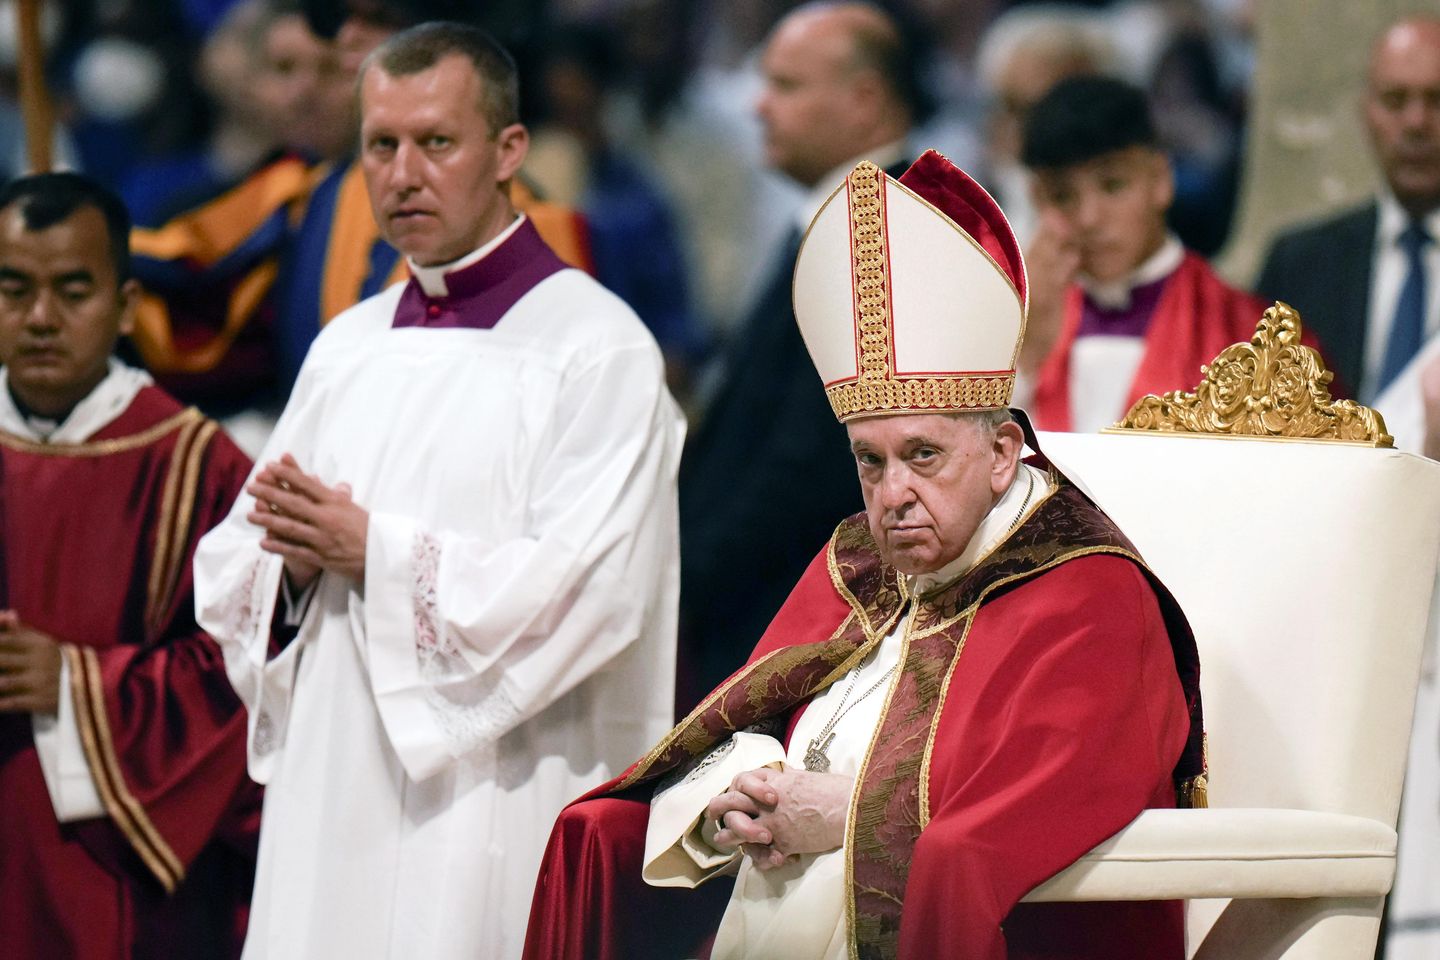 Papa, dini emirlere istismarı bildirmelerini, başkalarını korumalarını söylüyor